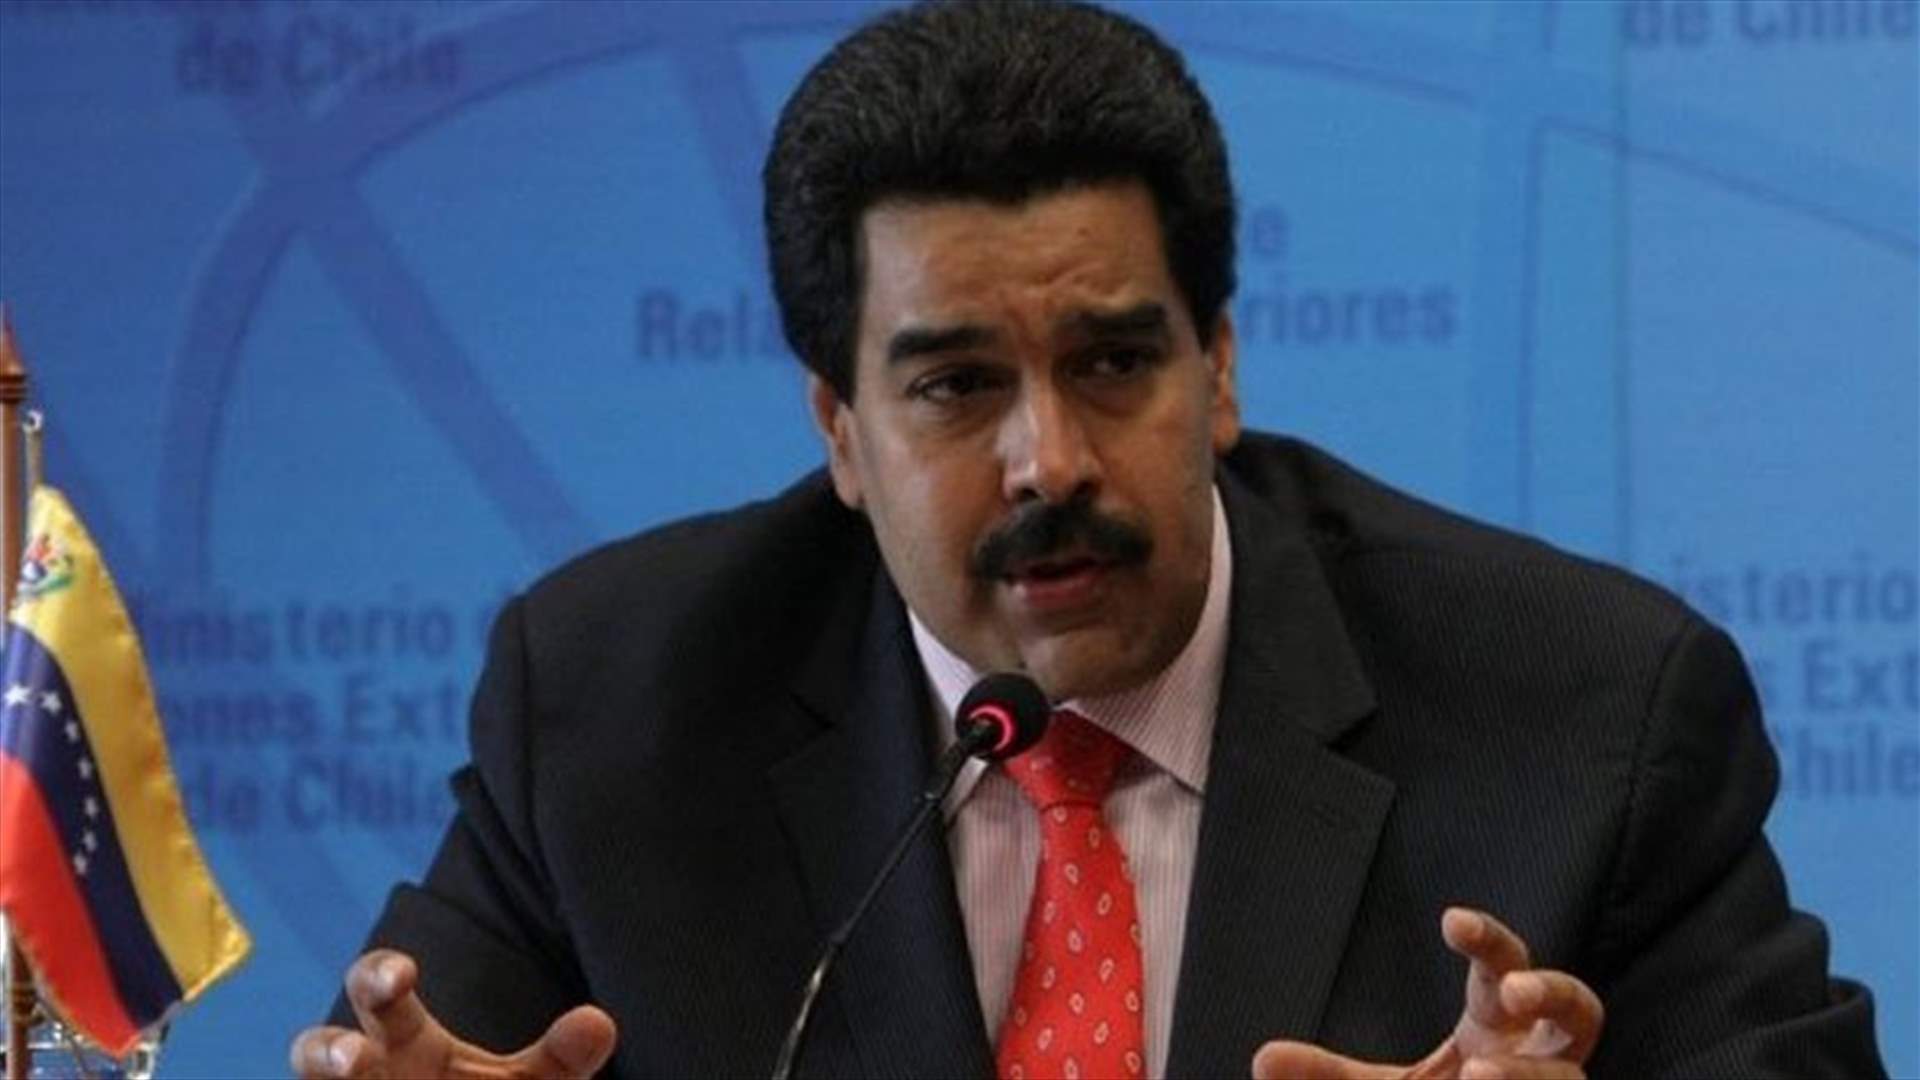 الرئيس الفنزويلي يهدد باعتقال قادة المعارضة